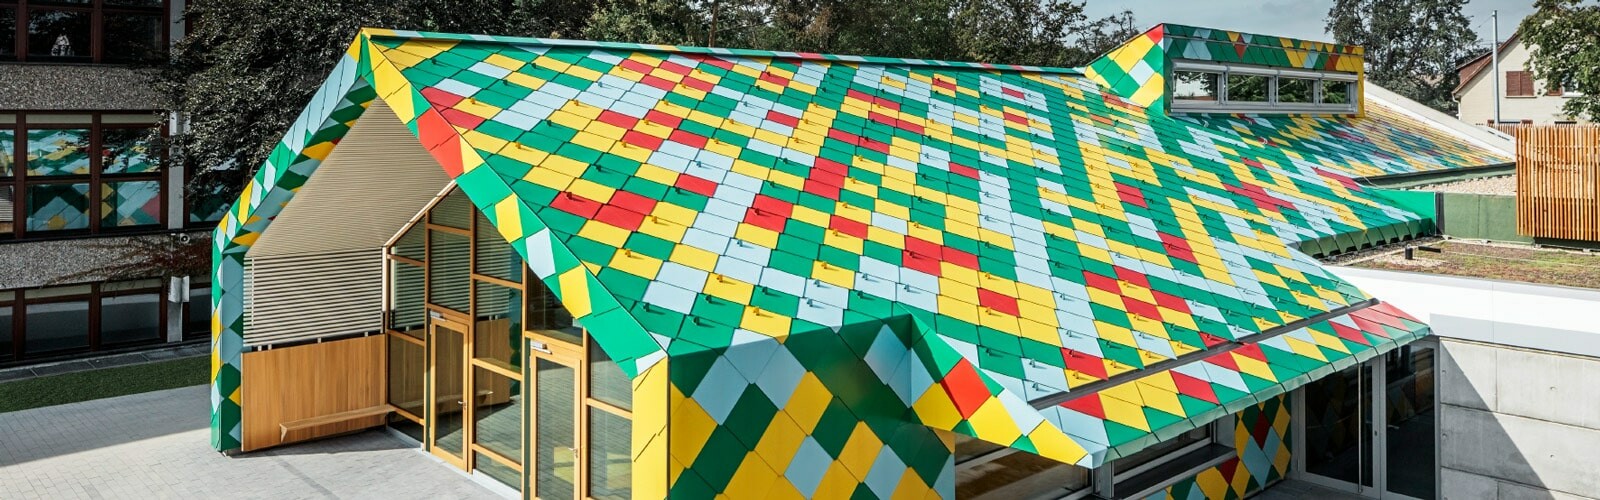 Über 4.000 PREFA Dach- und Wandrauten 44 × 44 in Sonderfarben wurden für die Eindeckung der Mensa Stuttgart benötigt